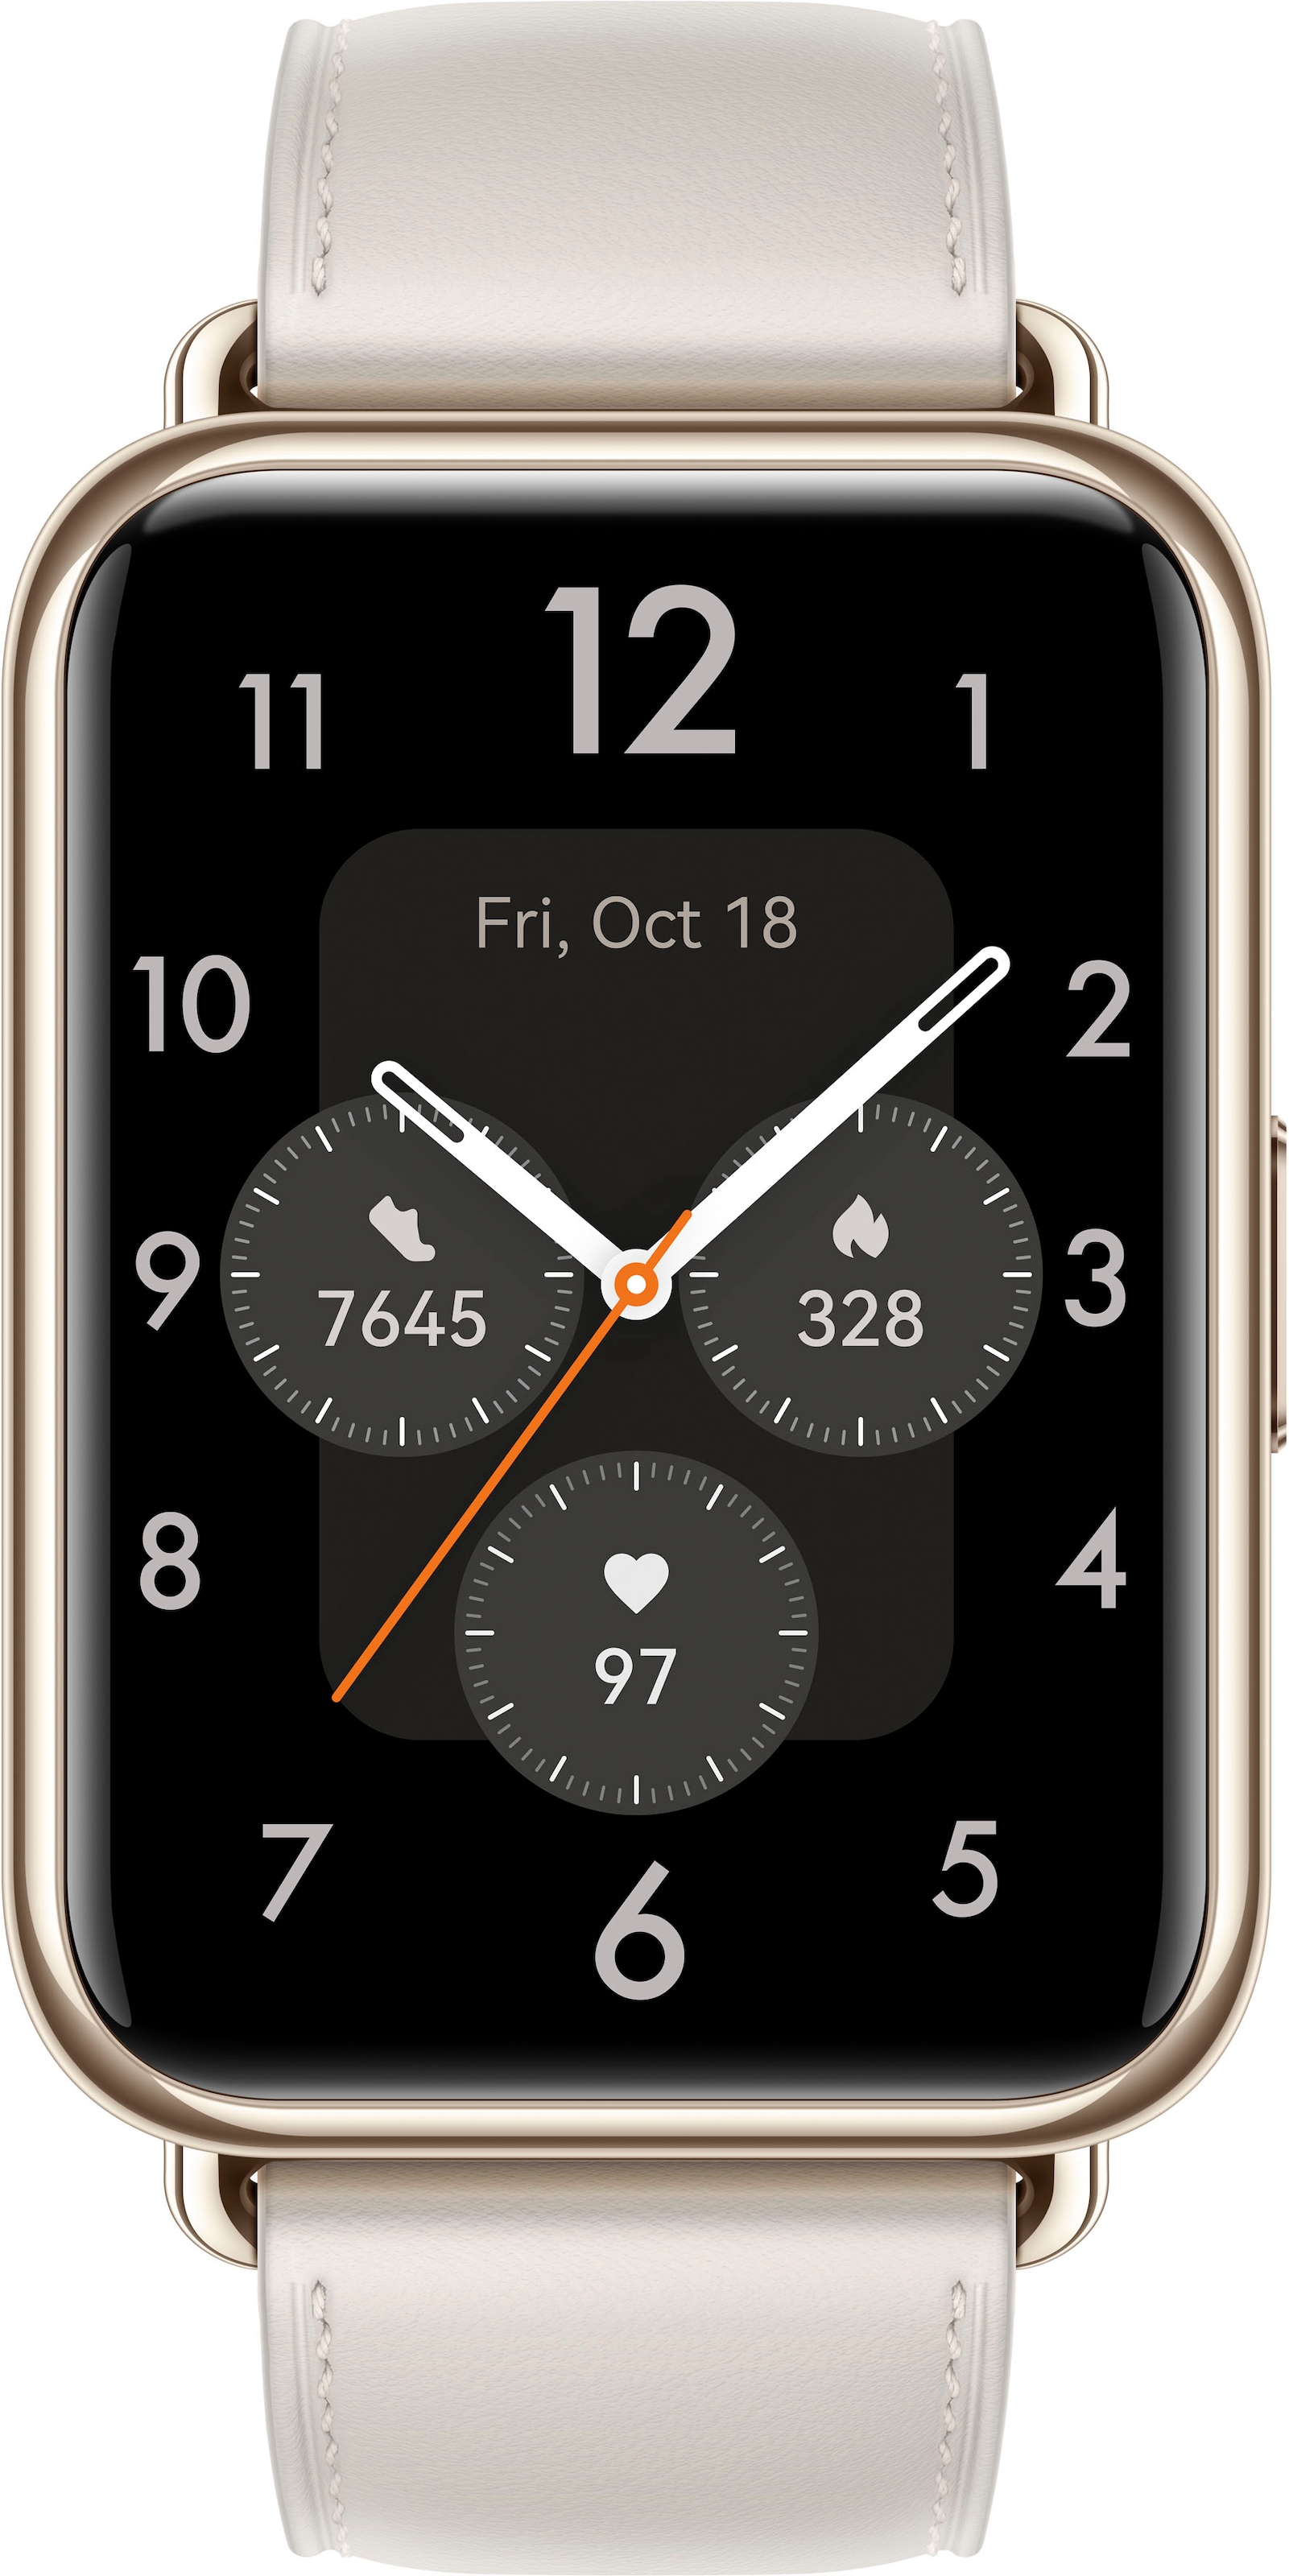 Huawei Smartwatch »Watch im bestellen (3 Fit Online-Shop 2«, Herstellergarantie) Jahre